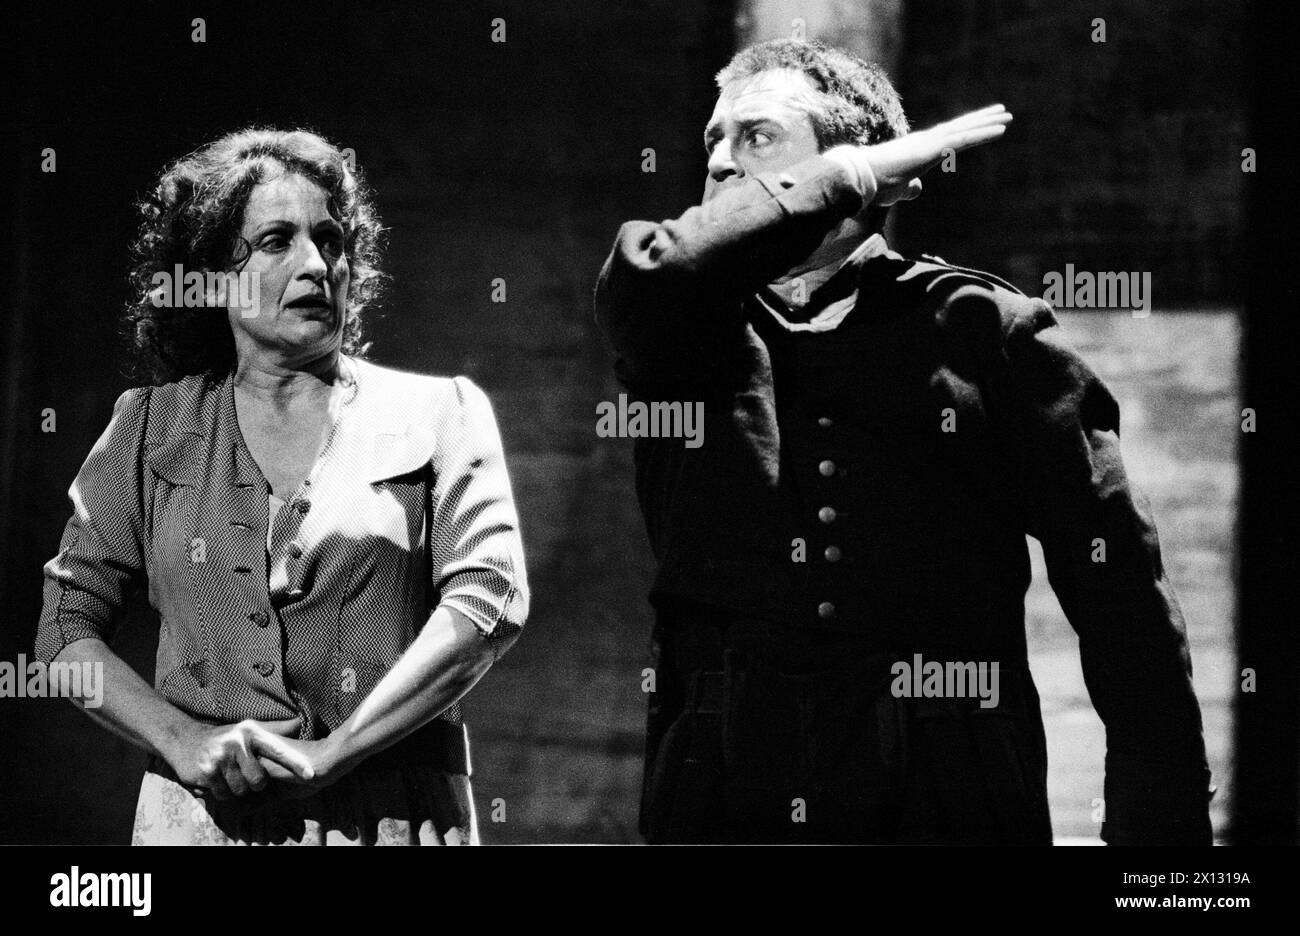 La photo a été prise le 9 juin 1987 à l'occasion de la création prochaine de la mise en scène par Adolf Dresen de 'Wozzeck' d'Alban Berg à l'Opéra d'État de Vienne et montre Hildegard Behrens dans le rôle de 'Marie' (à gauche) et Franz Grundheber dans le rôle de 'Wozzeck' (à droite). - 19870609 PD0005 - Rechteinfo : droits gérés (RM) Banque D'Images